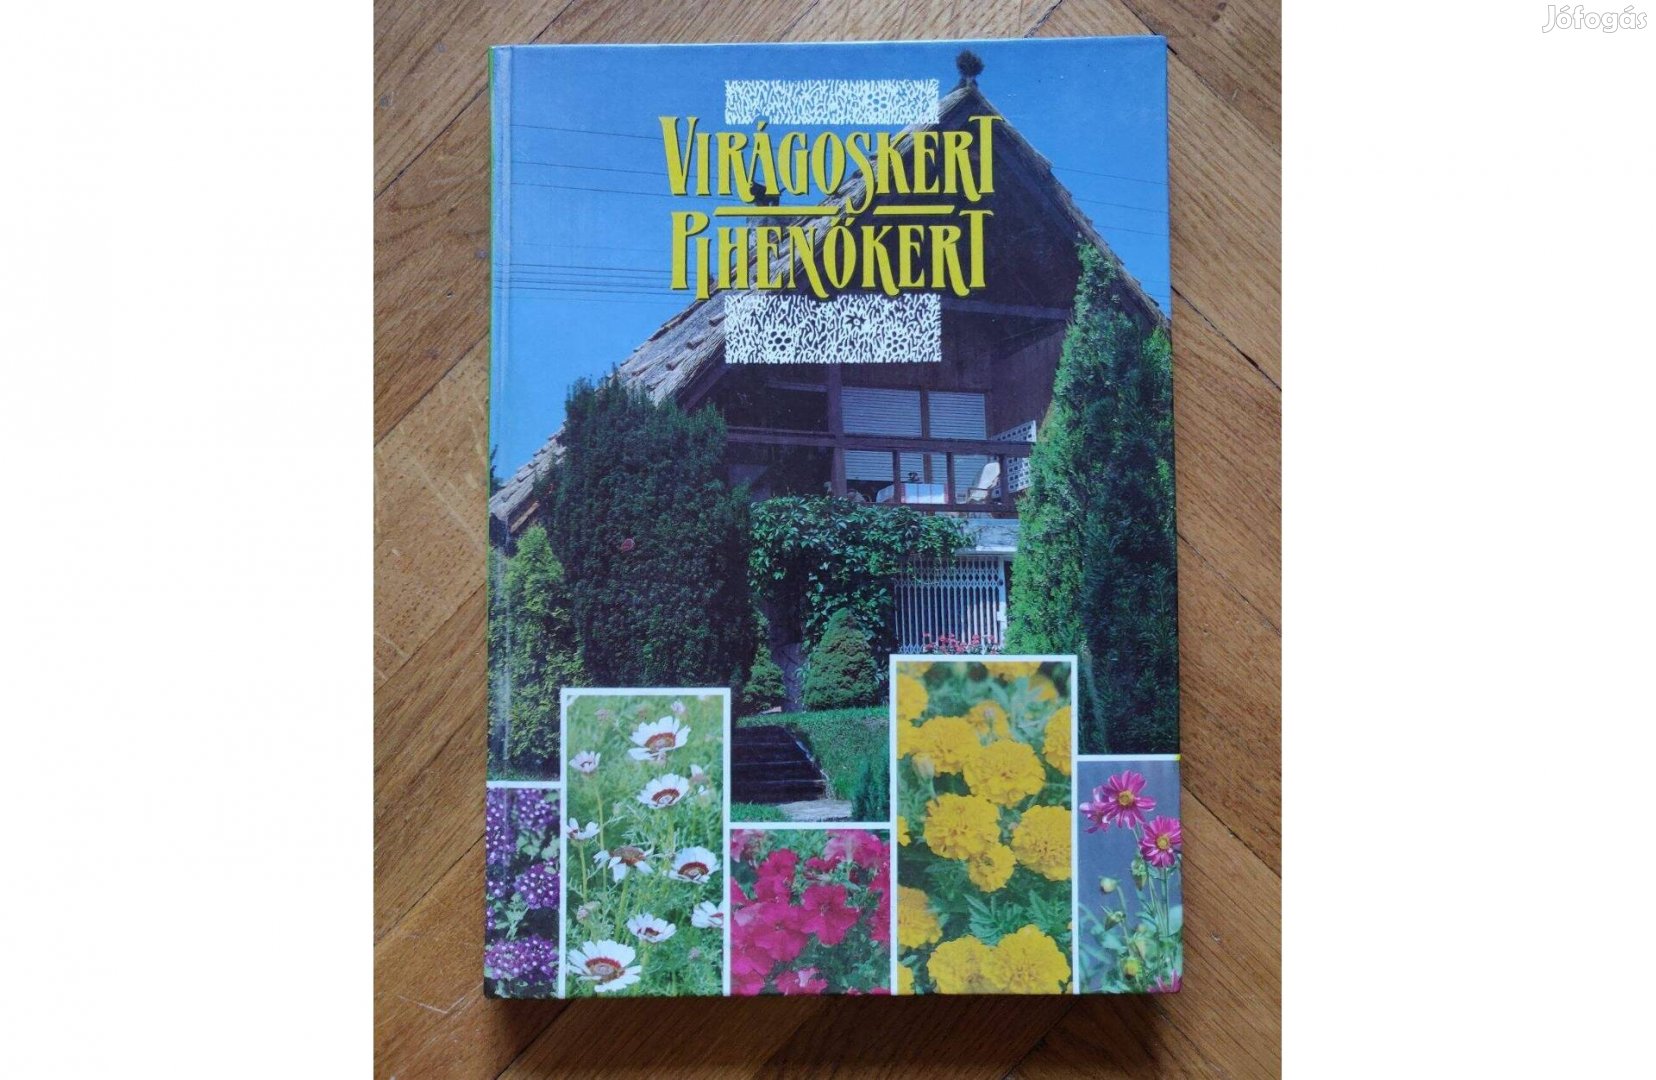 Lelkes Lajos Virágoskert, pihenőkert kertészeti könyv